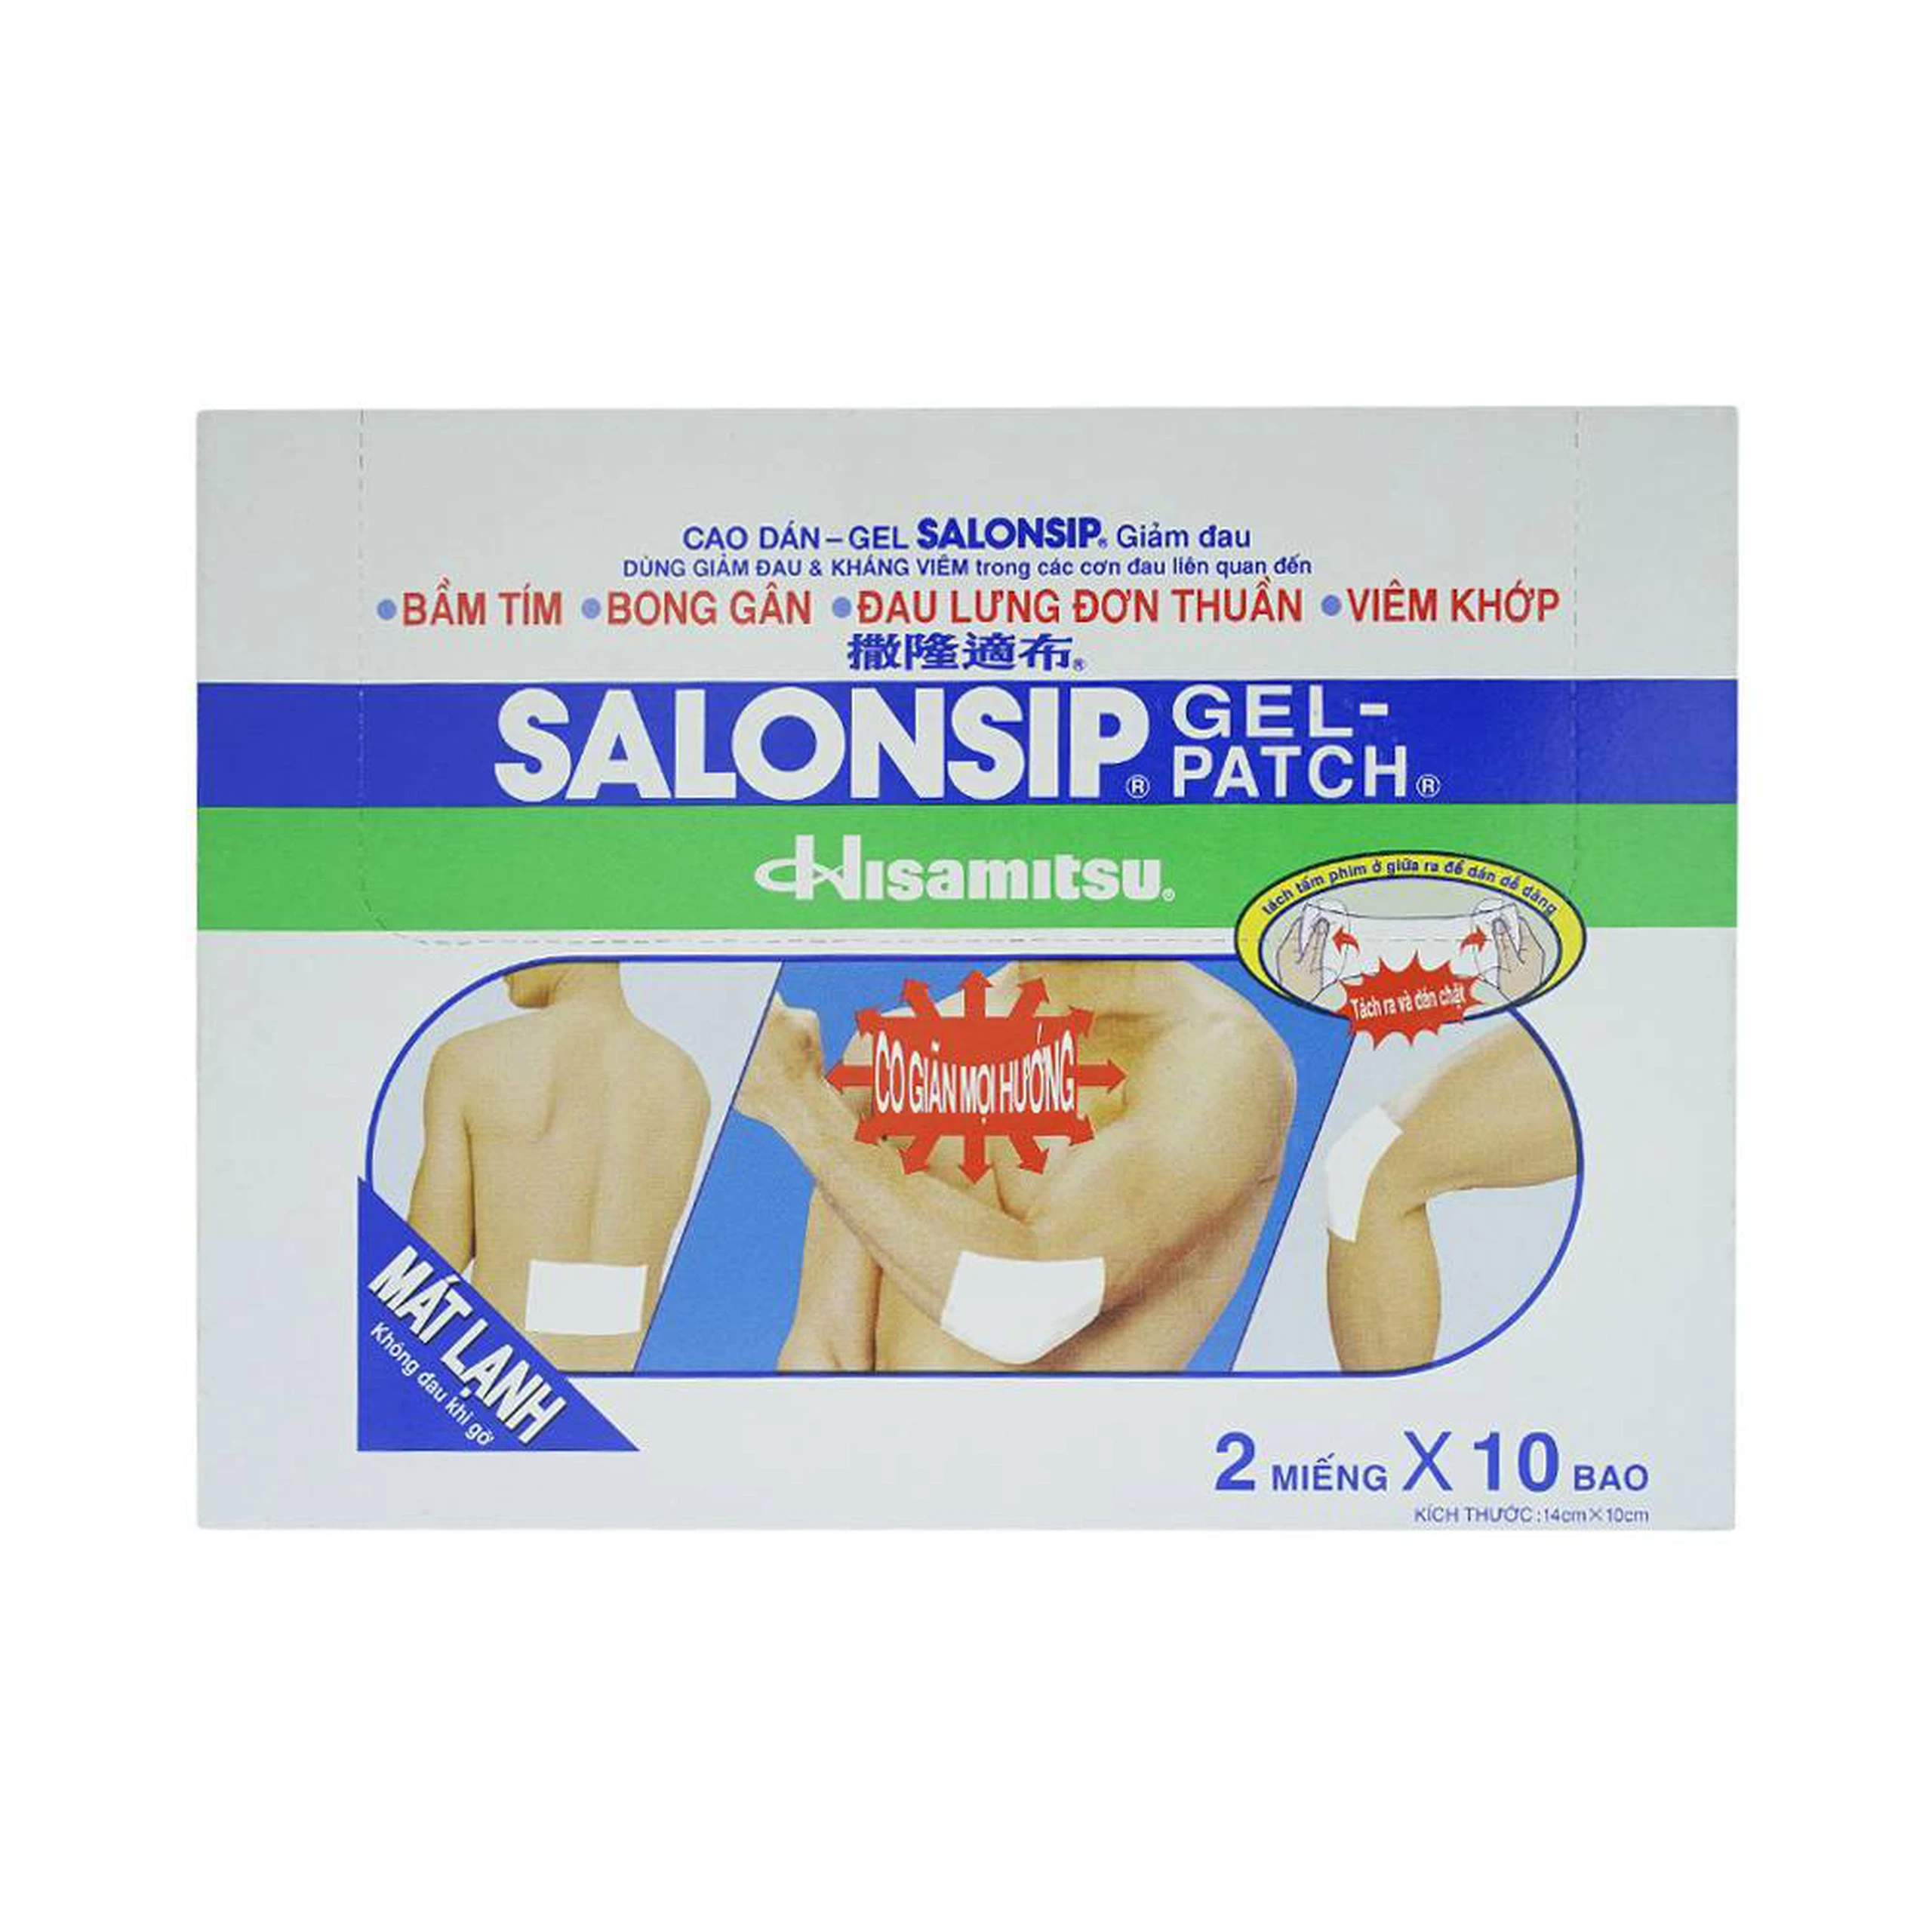 Cao dán - gel Salonship giảm đau, kháng viêm do bầm tím, bong gân (10 gói x 2 miếng)